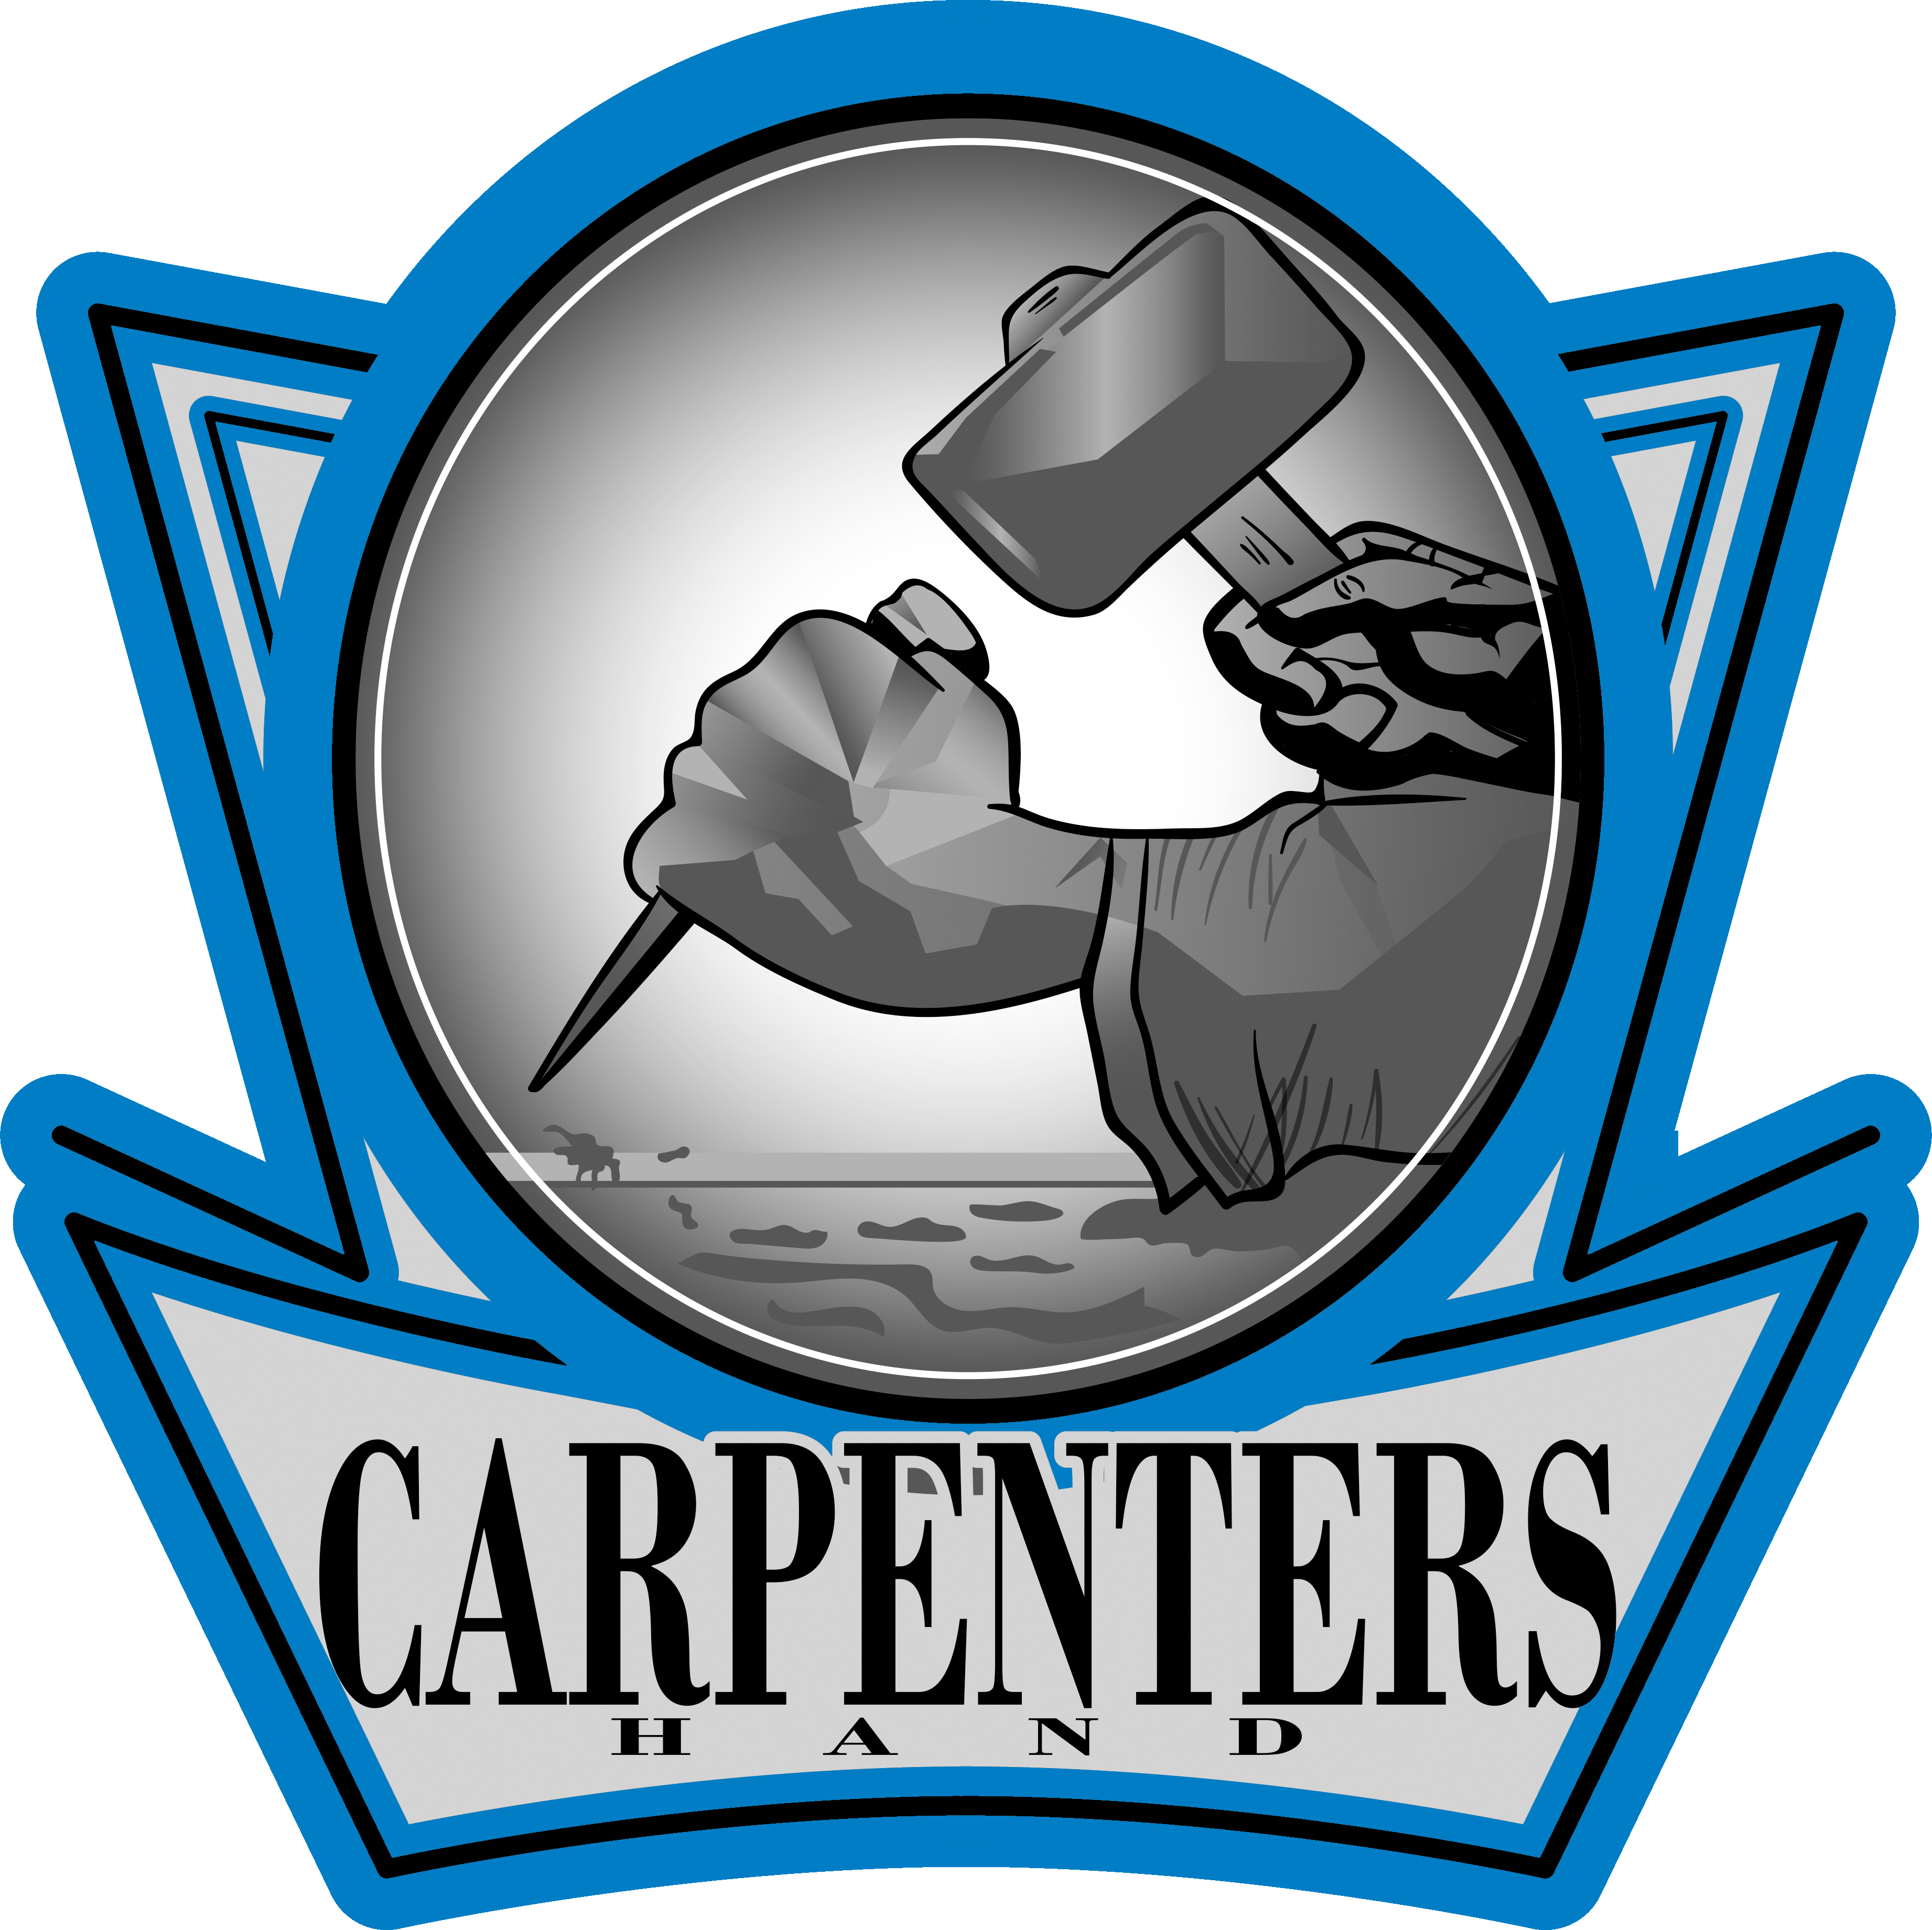 Carpenters Hand Logo - Carpenter's Hands Logo (3685x3682)